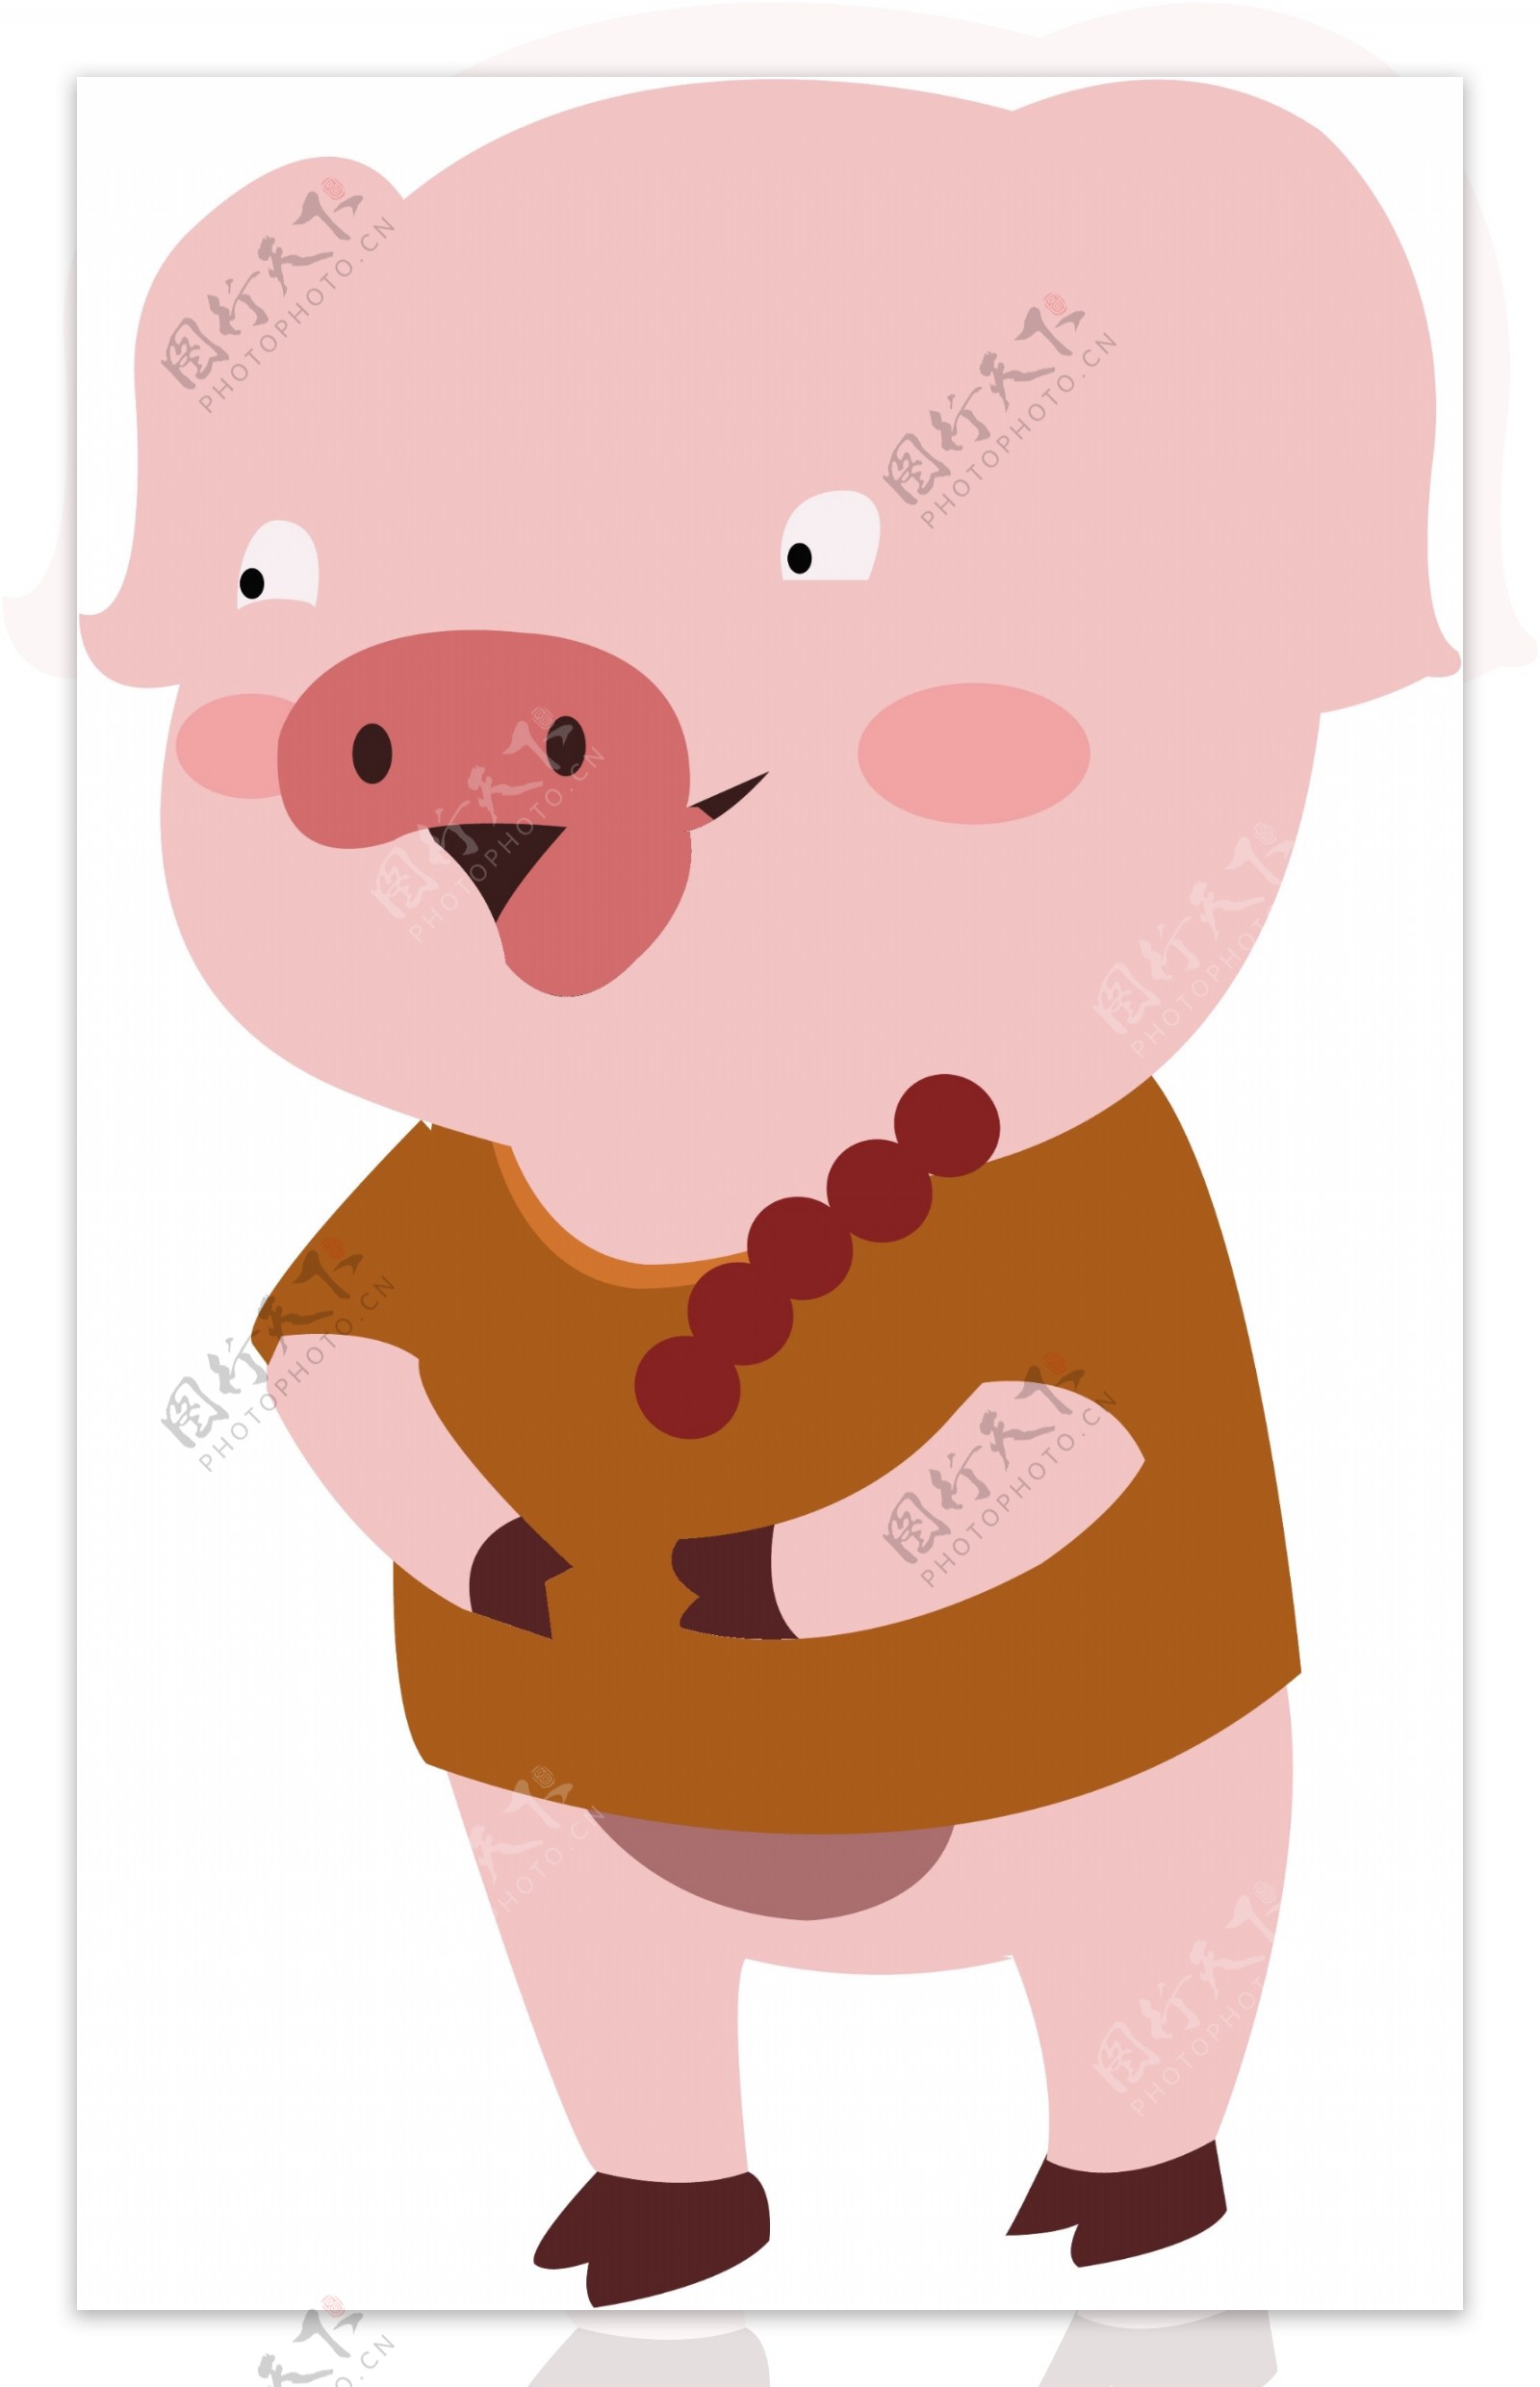 卡通矢量拿着糖葫芦的可爱小猪